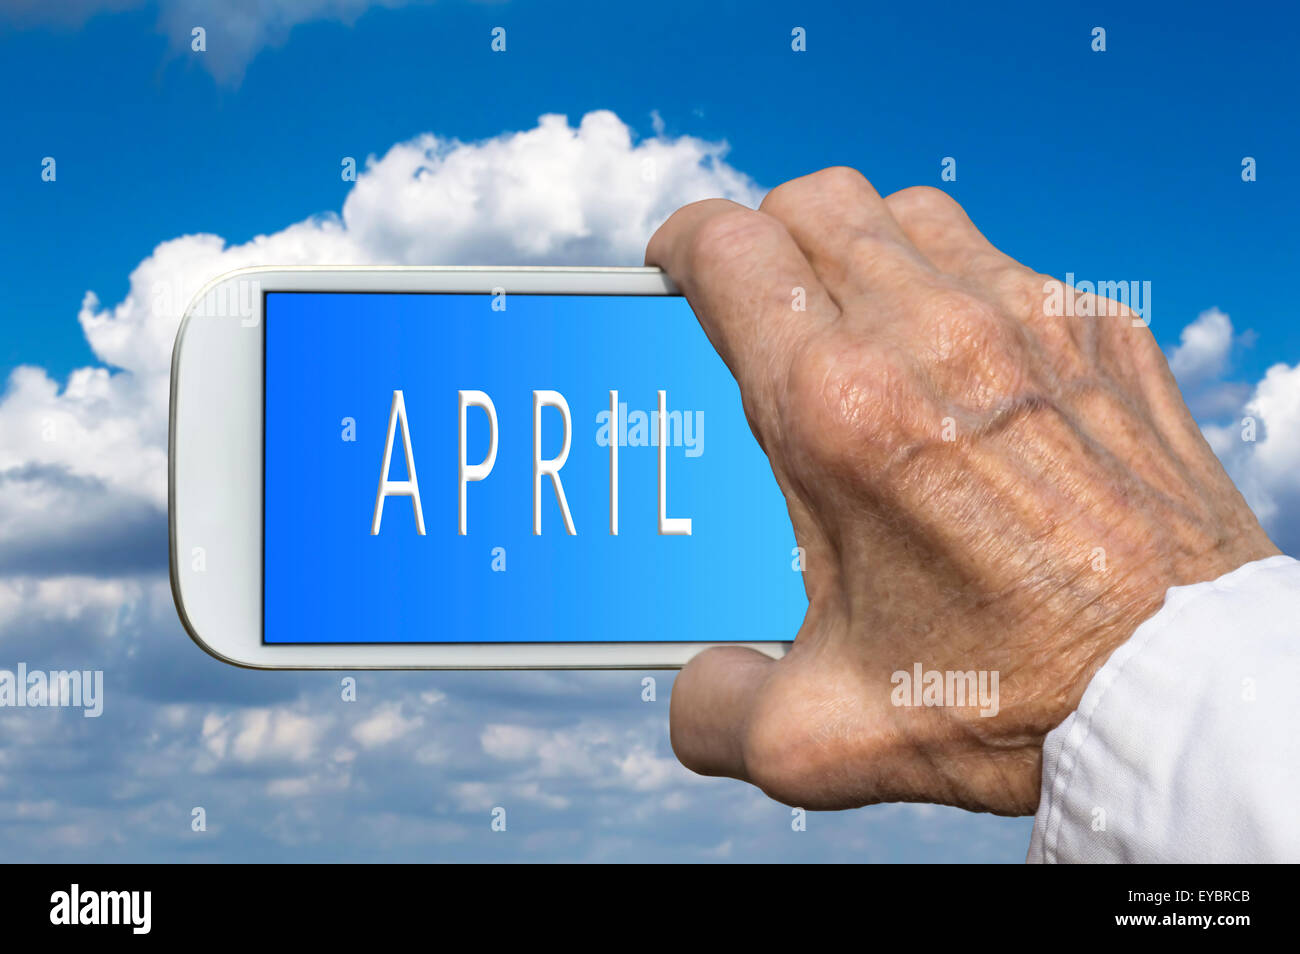 Smart phone in mano vecchia con il mese dell'anno - Aprile sullo schermo. Messa a fuoco selettiva. Foto Stock